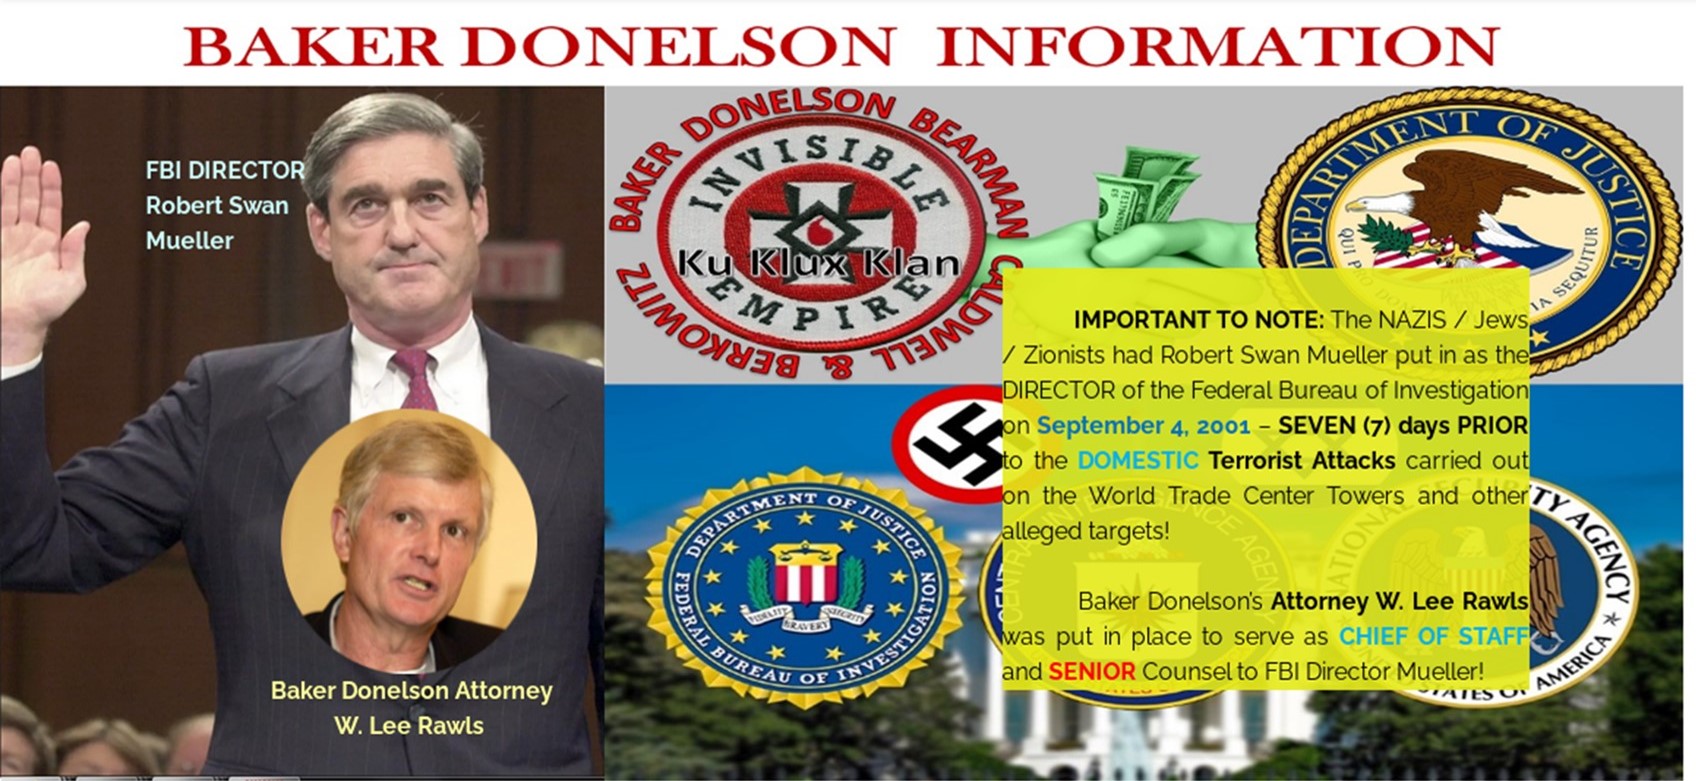 BAKER DONELSON and Robert Mueller 9 11 CONSPIRACIES